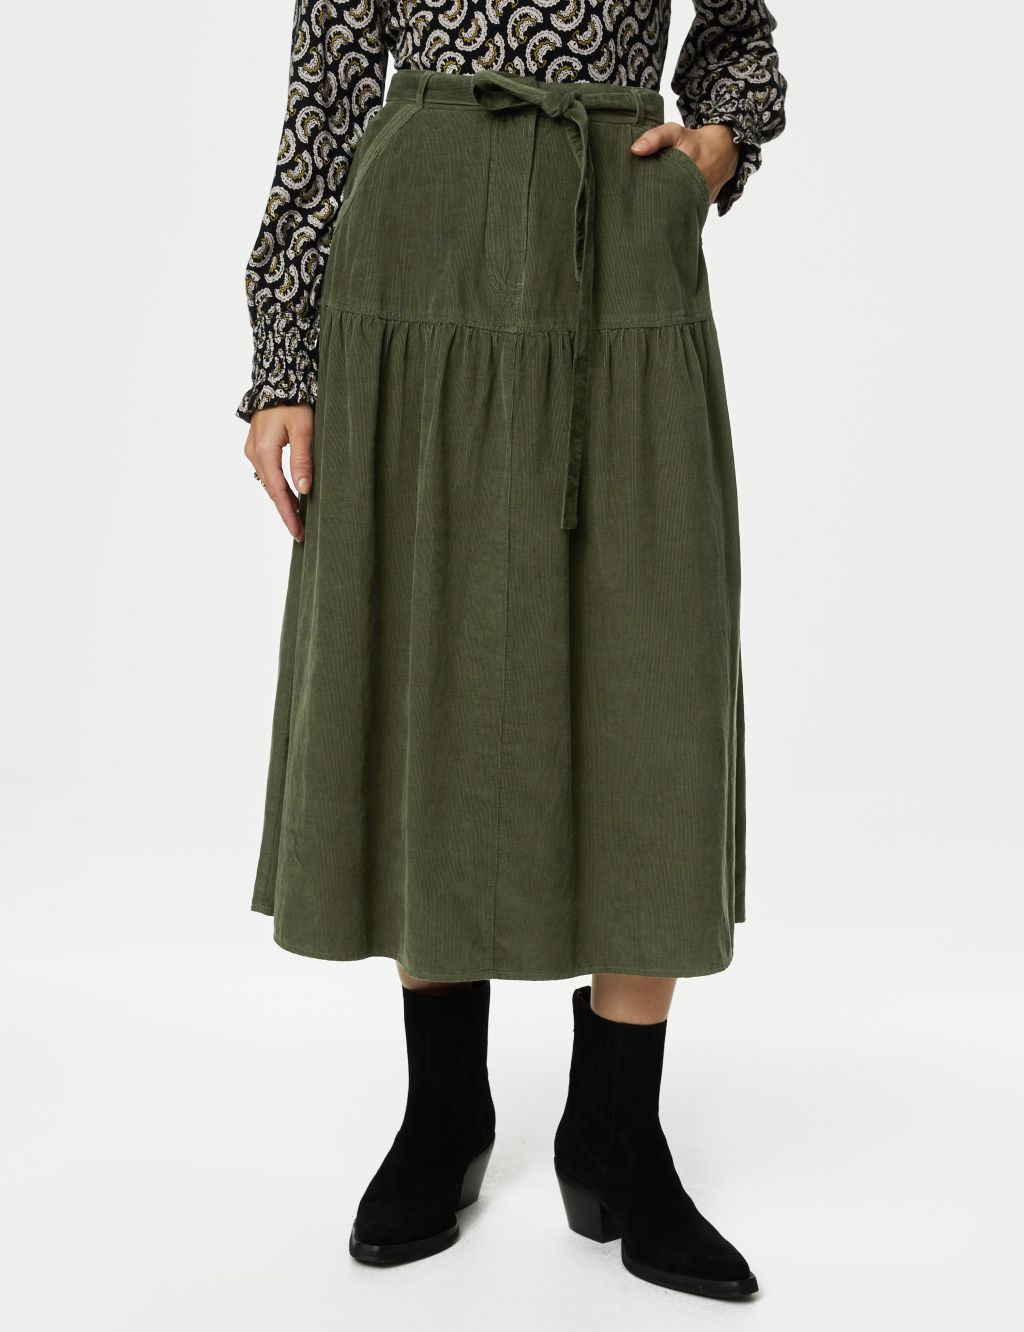 Khaki Textured Jersey High Waist Midaxi Skirt